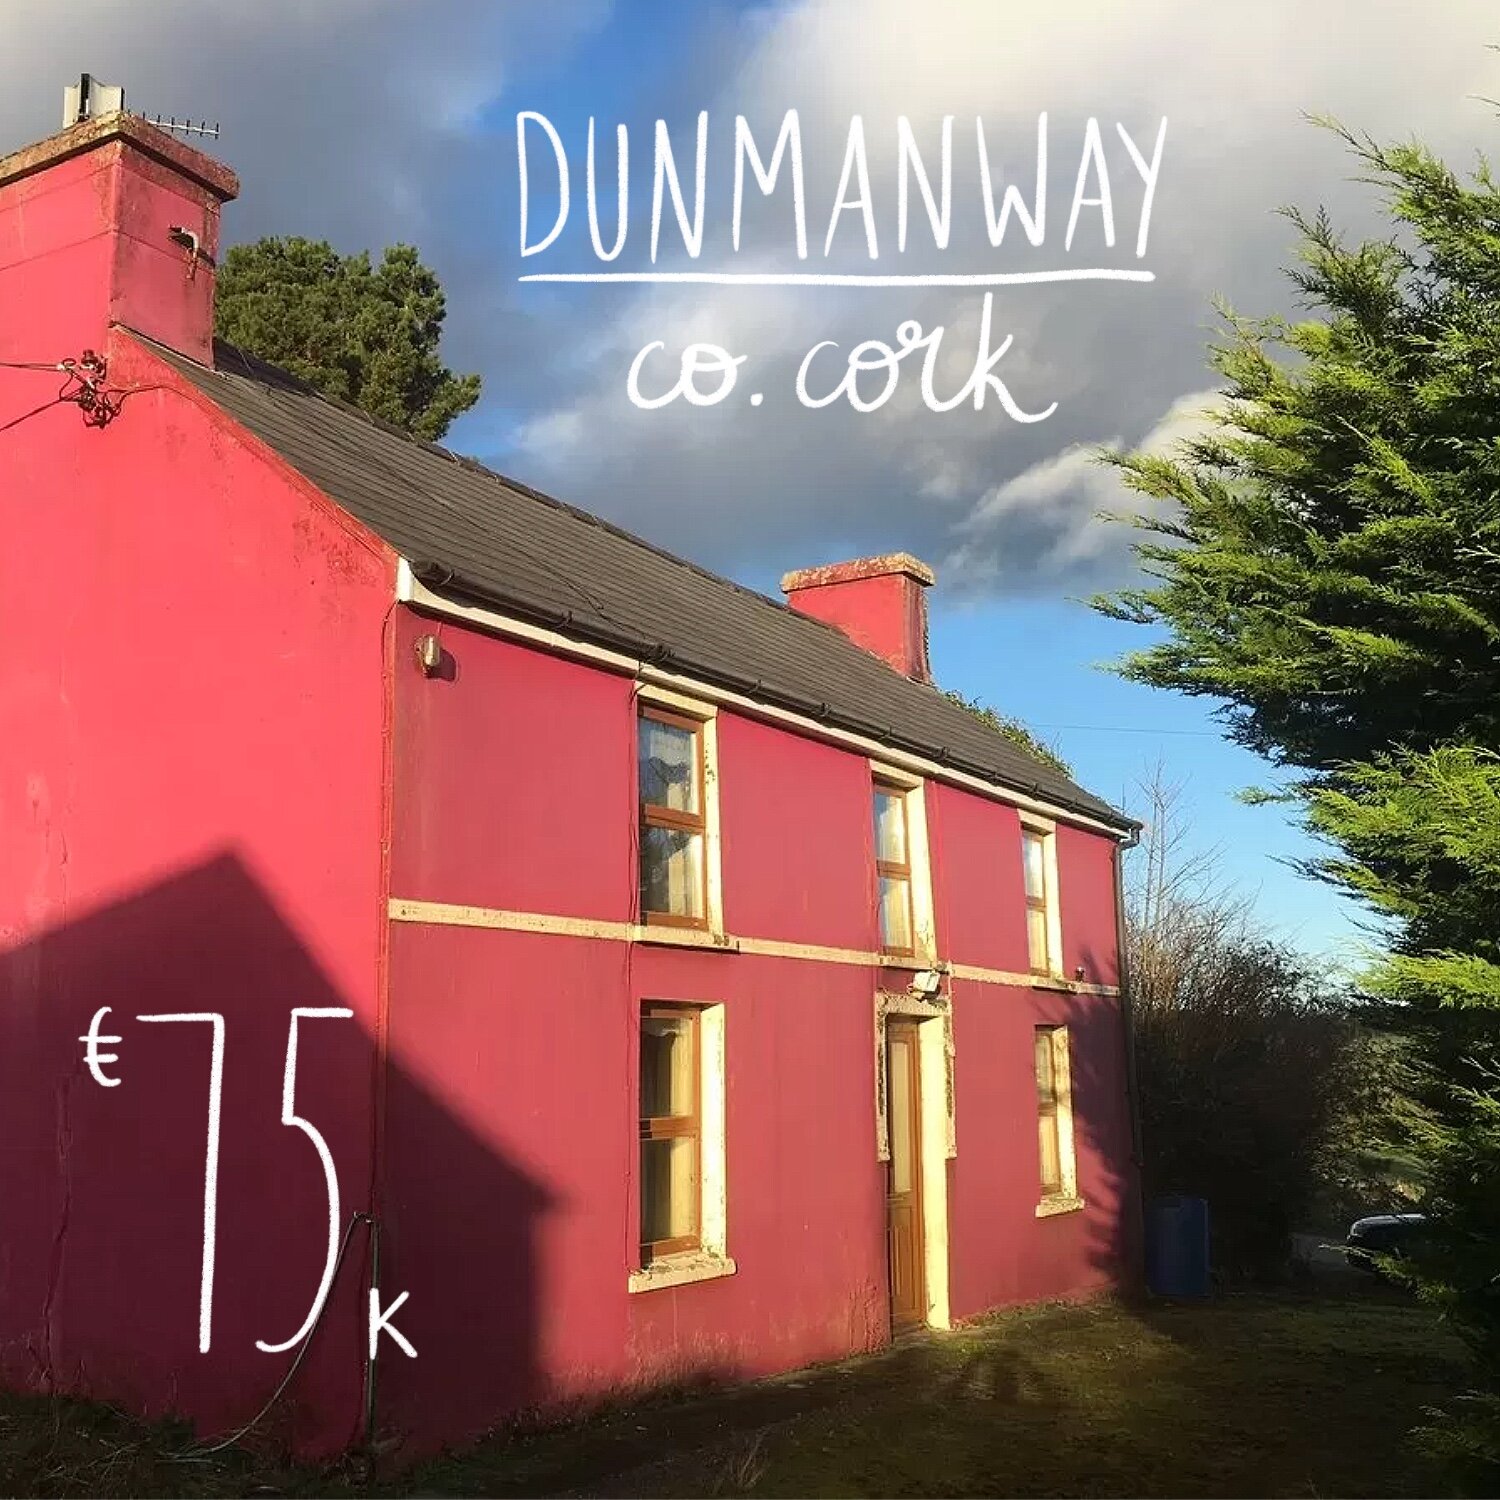 Dunmanway, Co. Cork. €75k